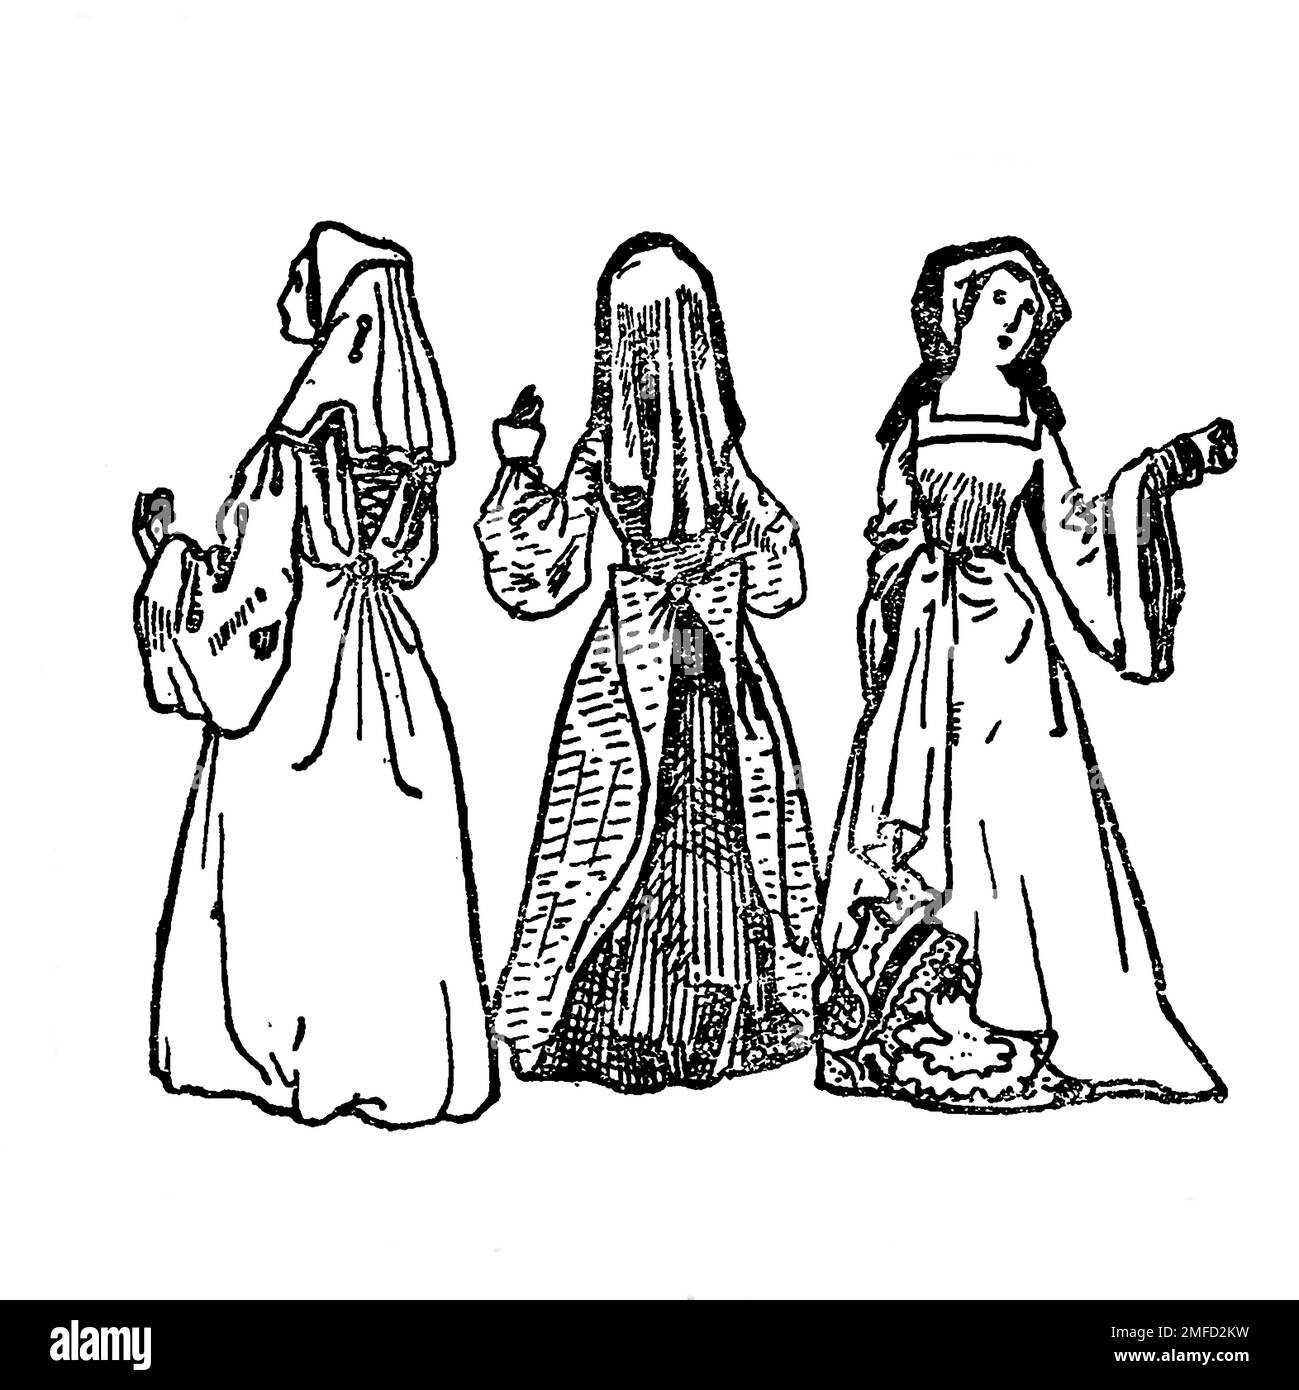 Strichzeichnung von Damenkleidern aus dem 15. Jahrhundert aus dem Buch " English Costume " von Dion Clayton Calthrop, 1878-1937 Publikationsdatum 1907 Publisher London, A. & C. Black Stockfoto